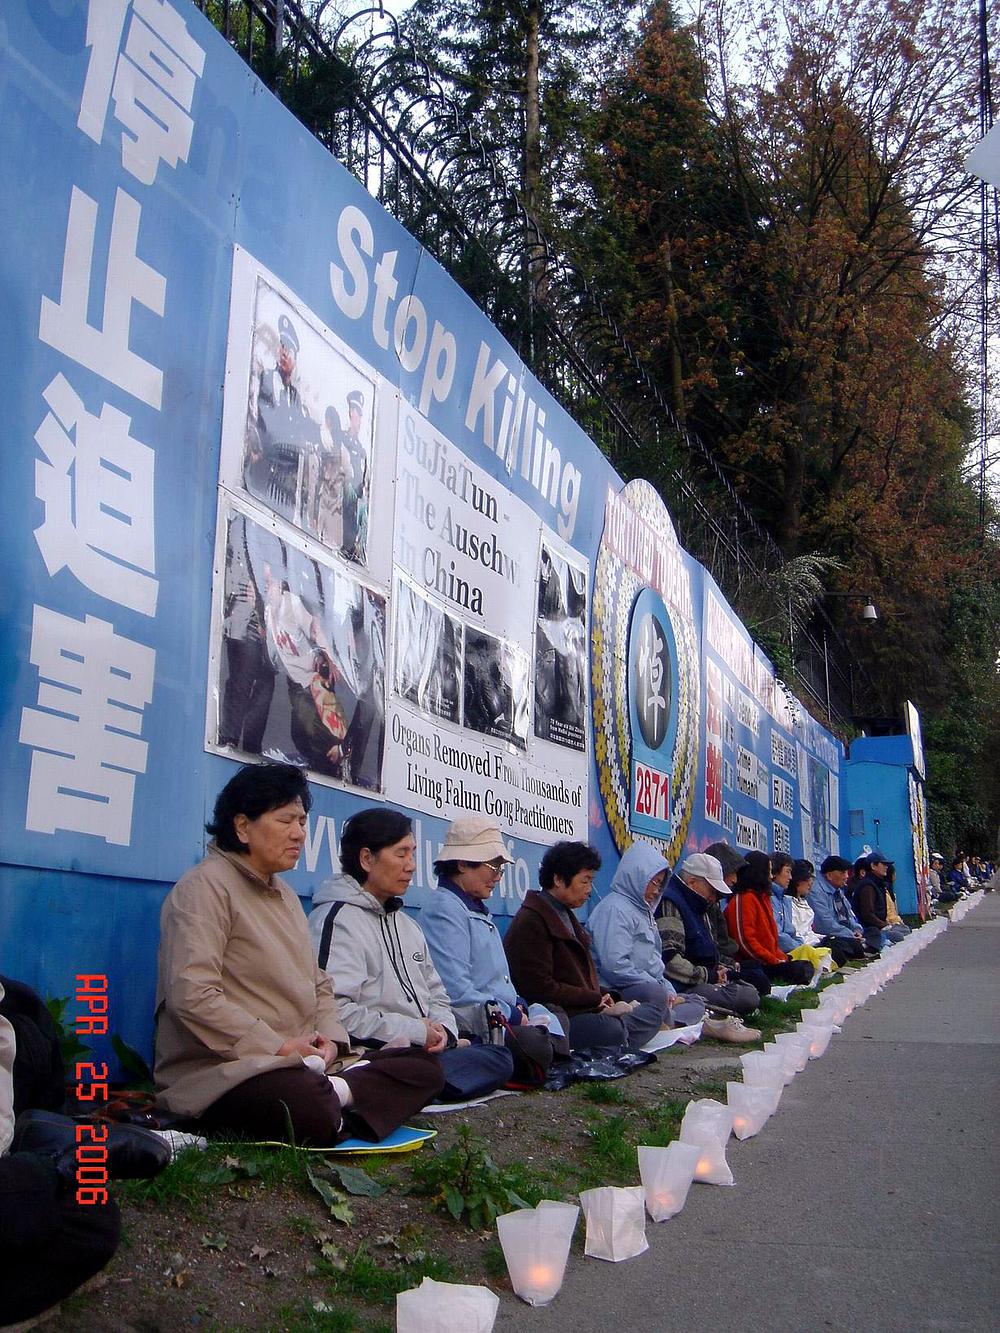 
Falun Dafa praktikanti u Vancouveru bez prestanka mirno protestiraju ispred kineskog konzulata, bilo sunce ili kiša